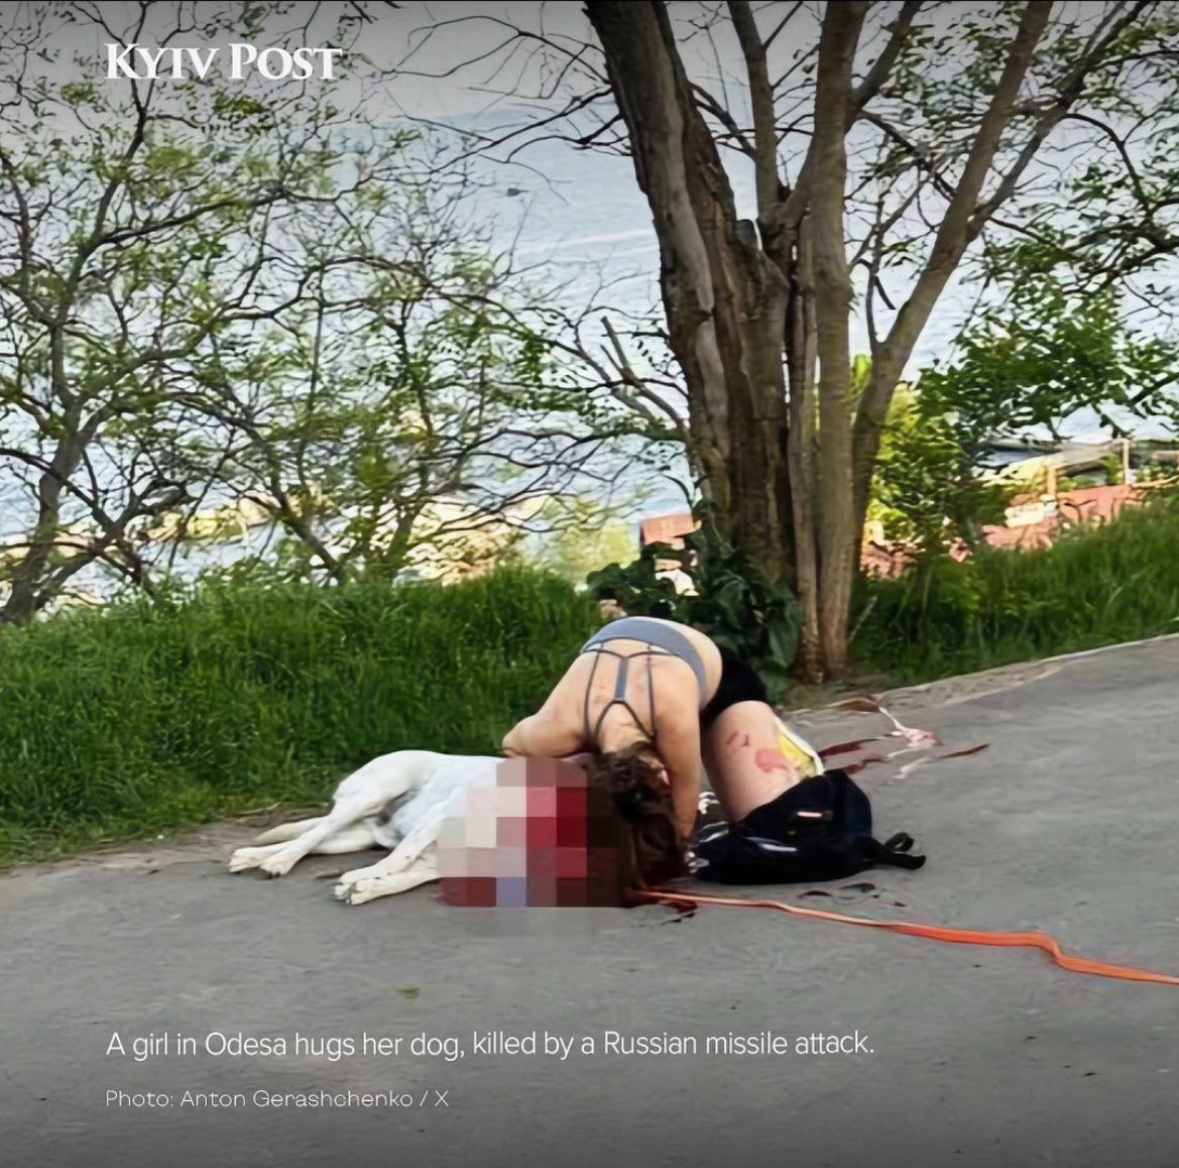 Łamiące serce zdjęcie. Dziewczyna wyprowadzała swego psa na spacer, gdy na ukraińską Odessę 🇺🇦 spadły rosyjskie pociski 🇷🇺. Zwierzę zmarło na miejscu w rękach zrozpaczonej kobiety.